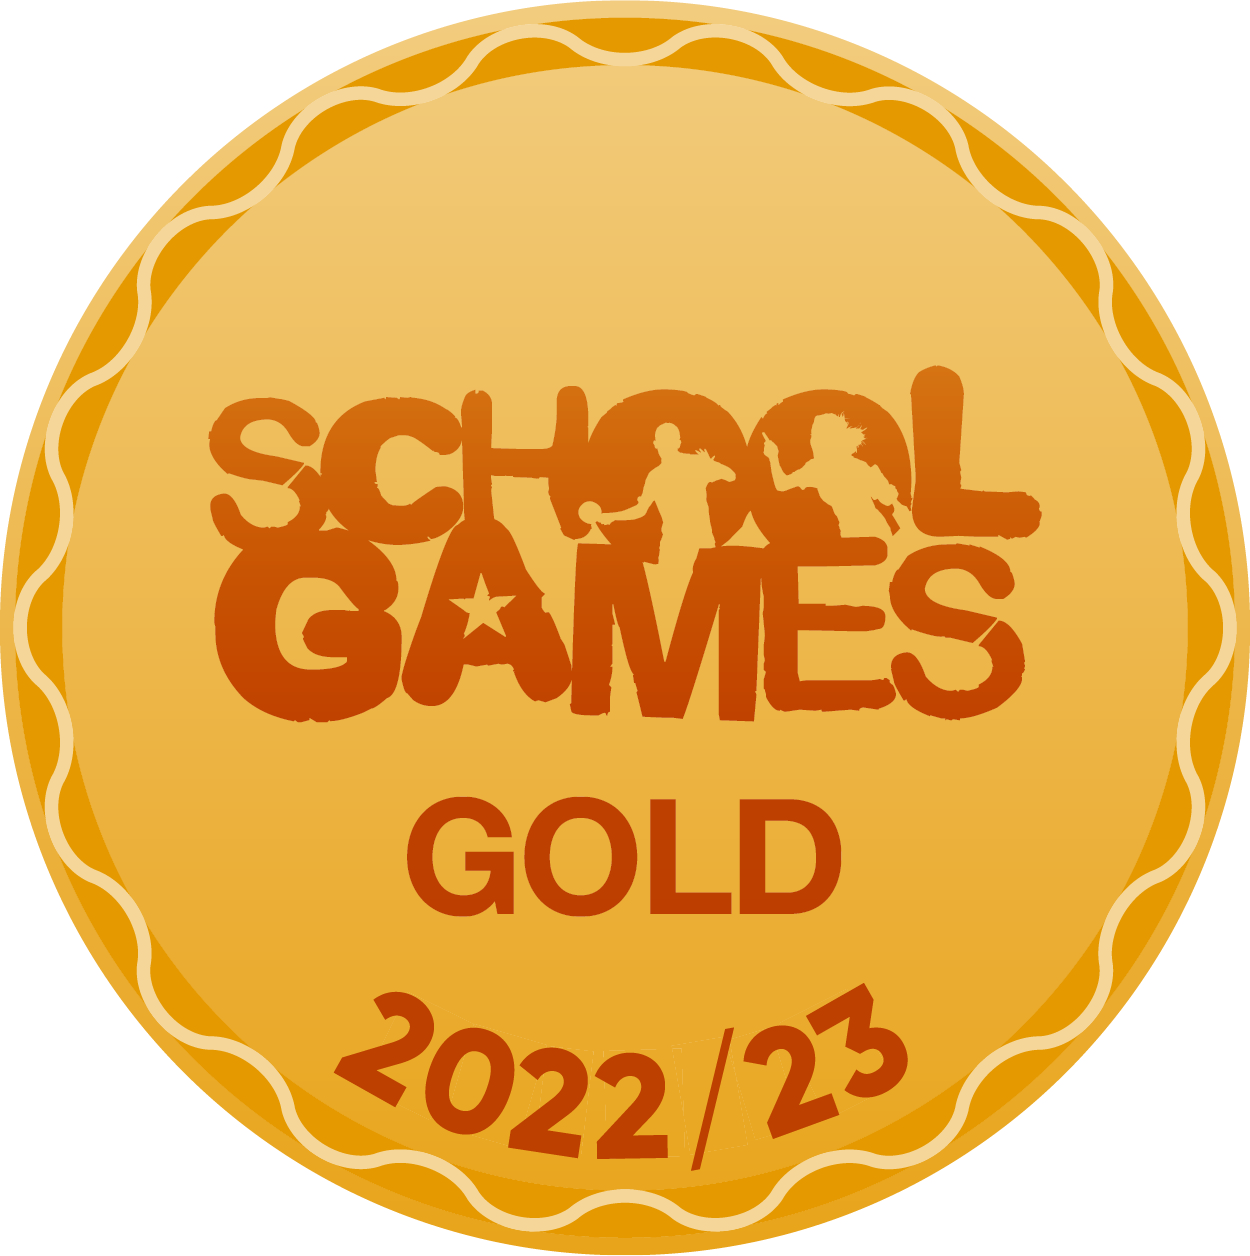 School Games - Gold 2022/23